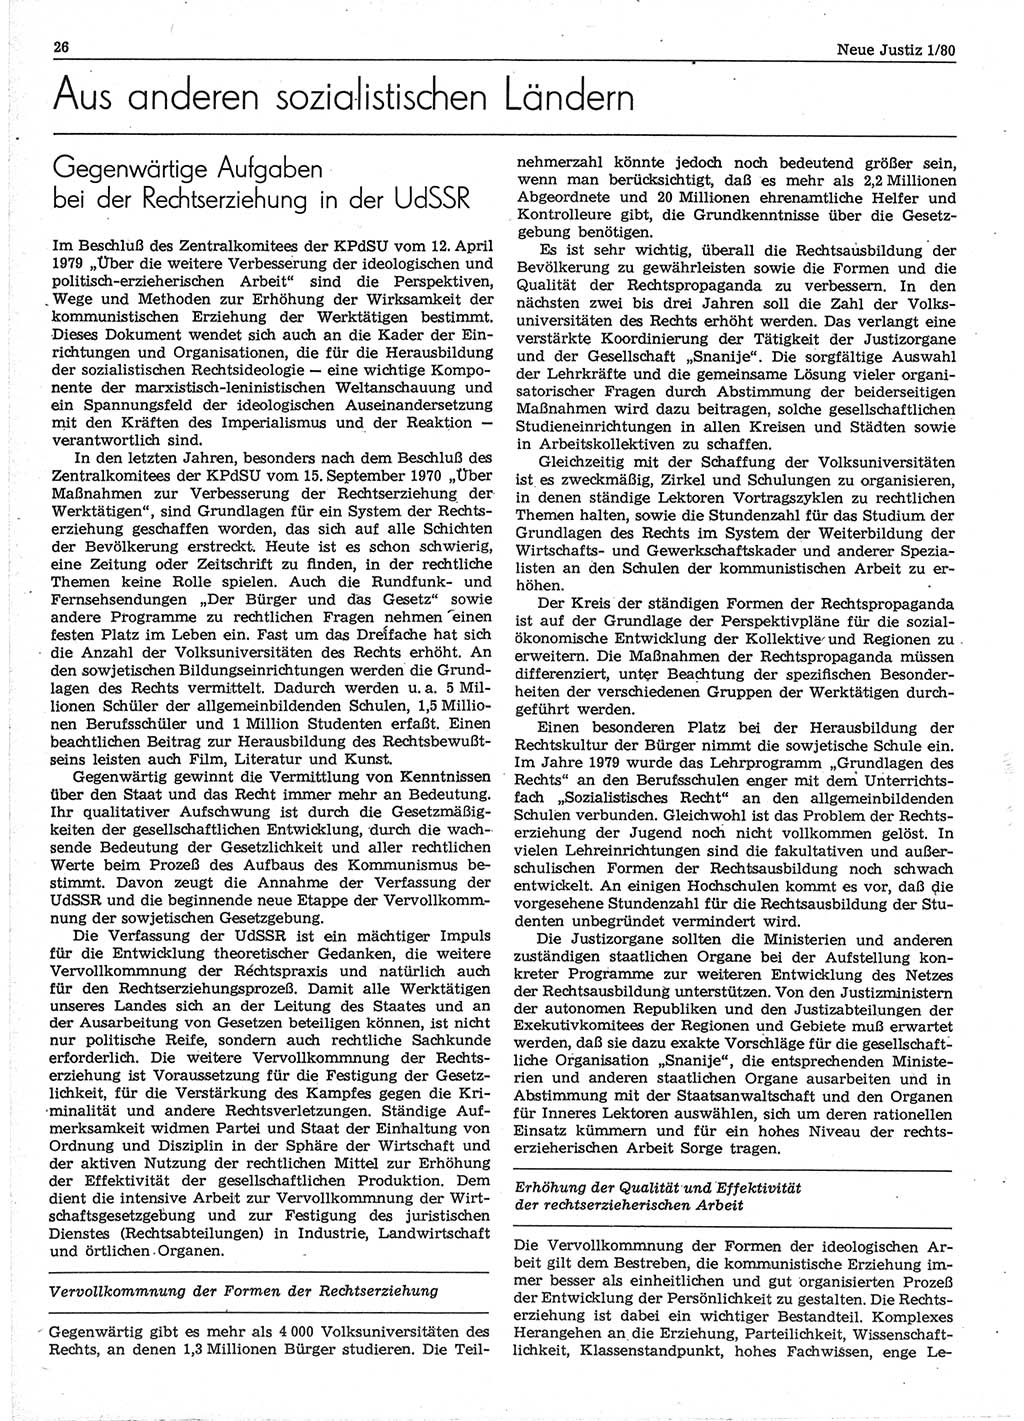 Neue Justiz (NJ), Zeitschrift für sozialistisches Recht und Gesetzlichkeit [Deutsche Demokratische Republik (DDR)], 34. Jahrgang 1980, Seite 26 (NJ DDR 1980, S. 26)